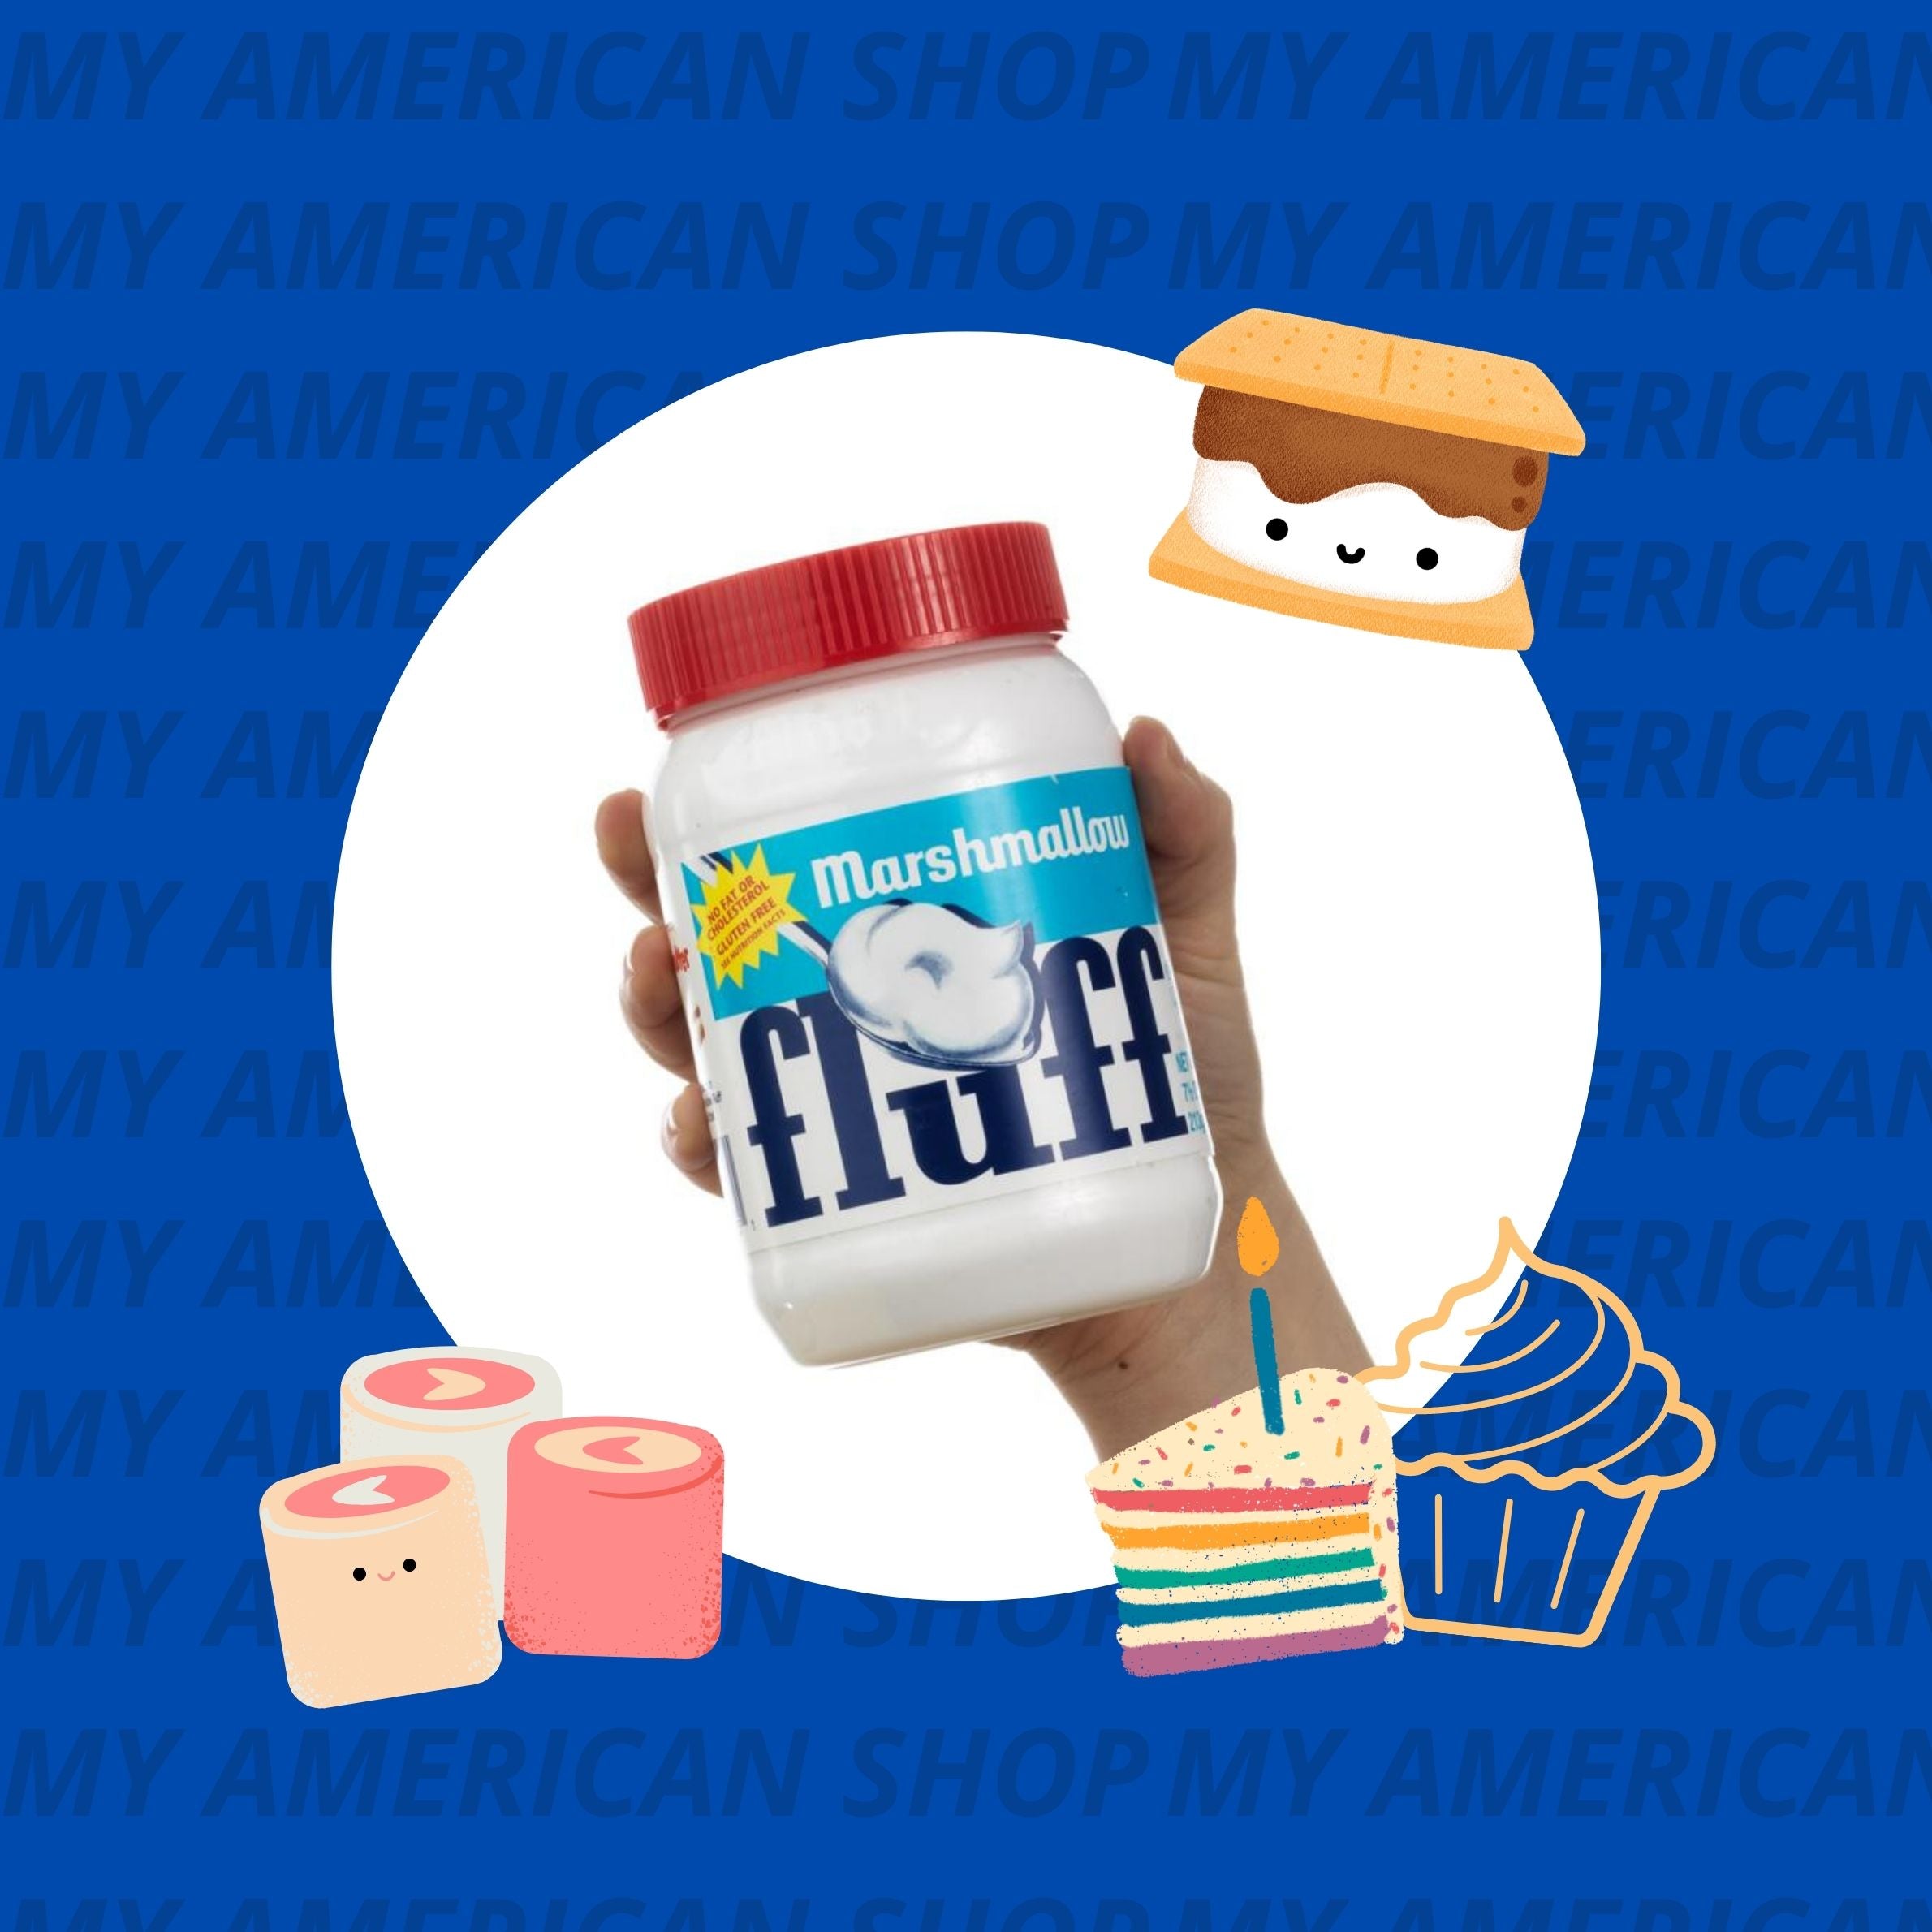 Fluff - my american shop